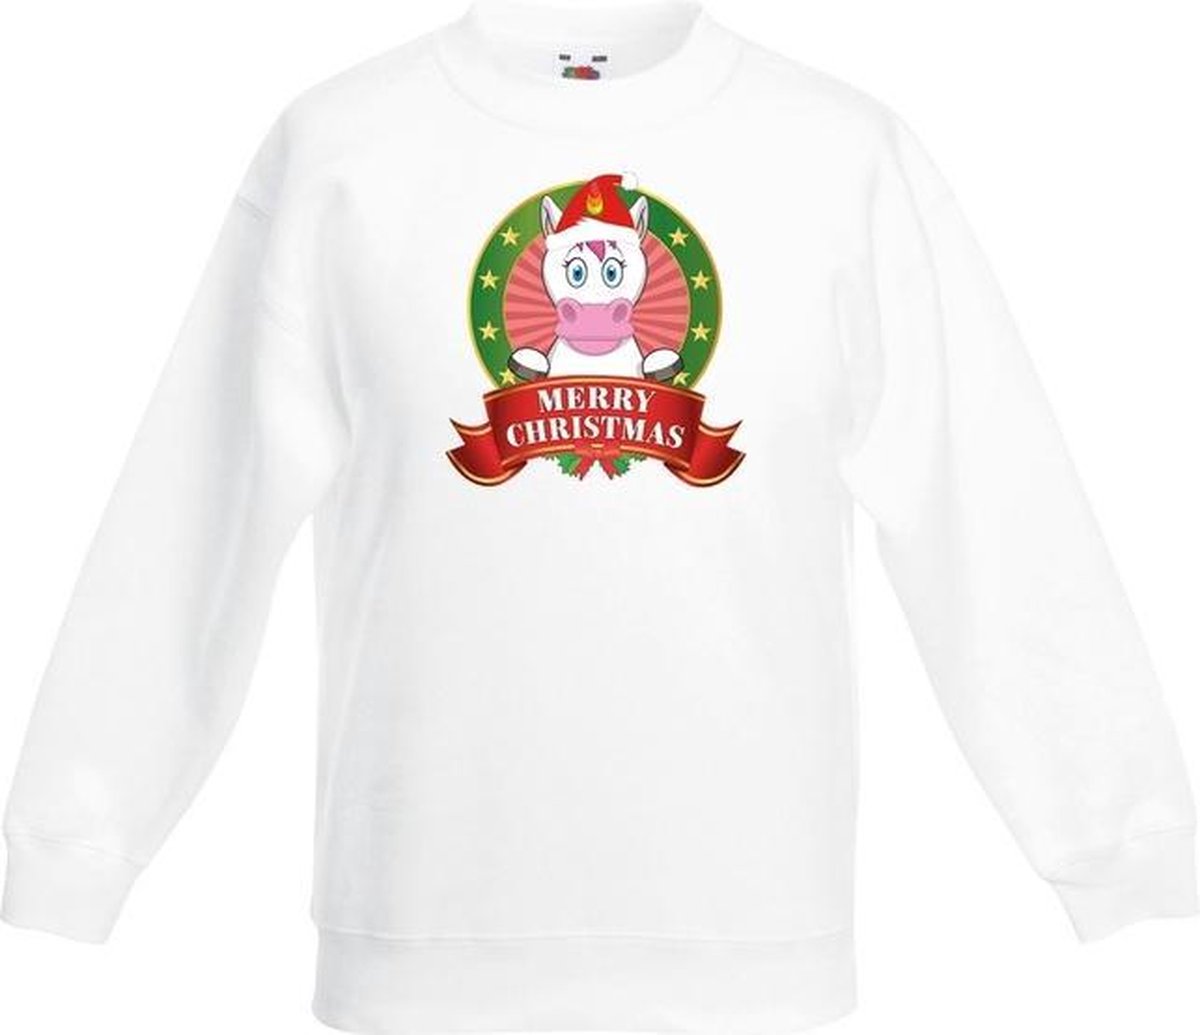 Kerst sweater voor kinderen met eenhoorn print - wit - jongens en meisjes sweater 3-4 jaar (98/104)